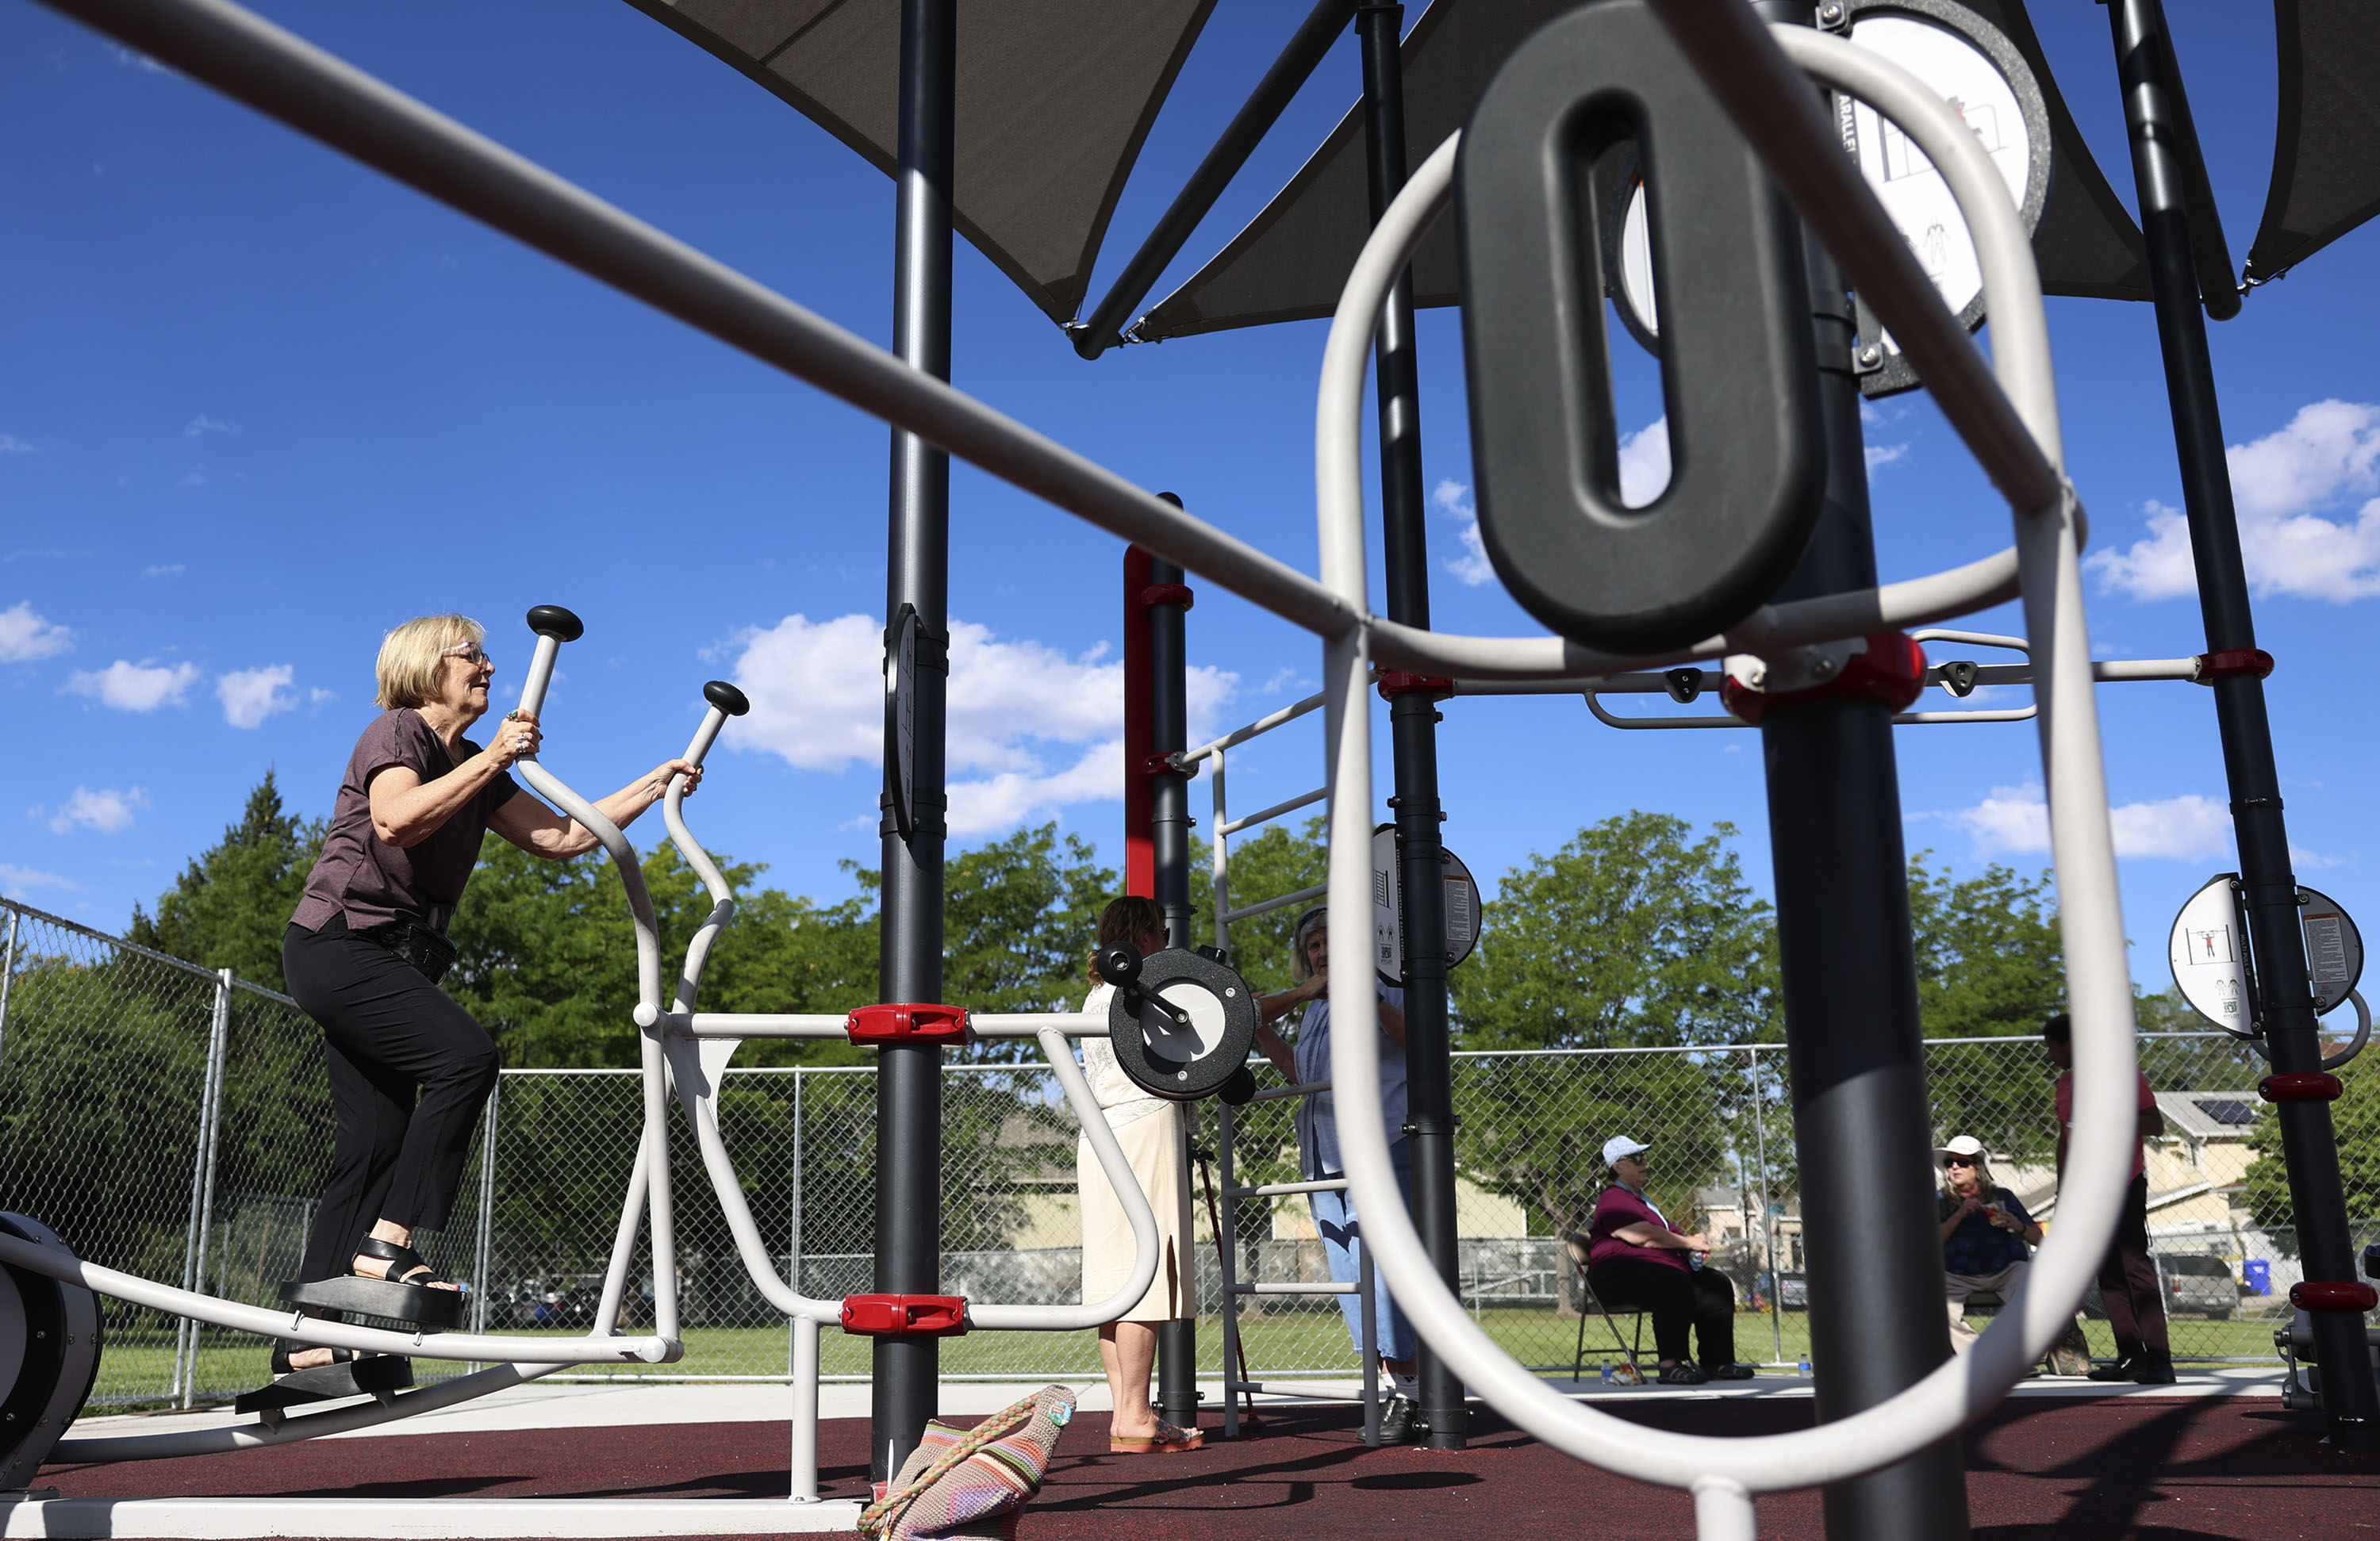 Outdoor Fitness Equipment …  Outdoor fitness equipment, Outdoor